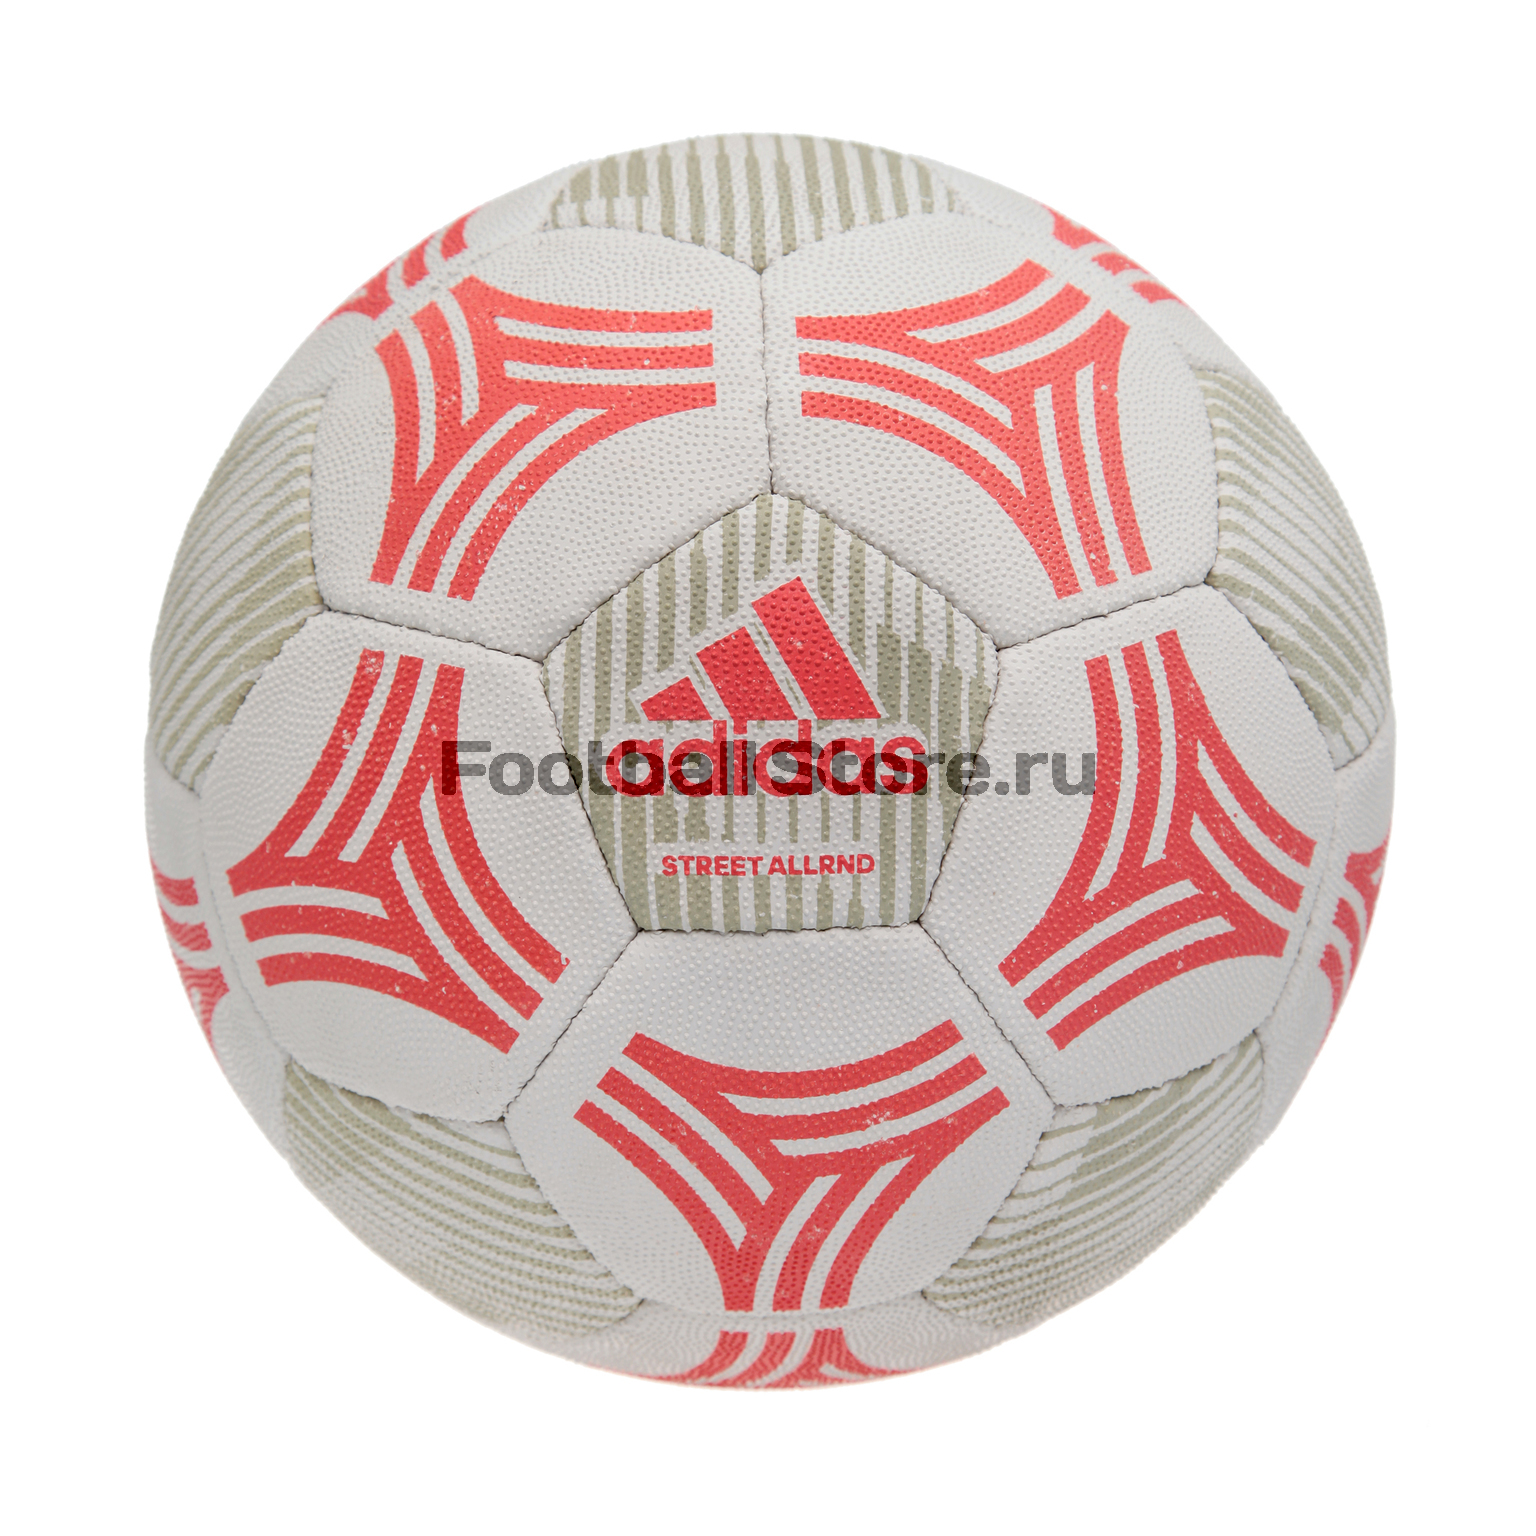 Футбольный мяч Adidas Tango Allround CE9980